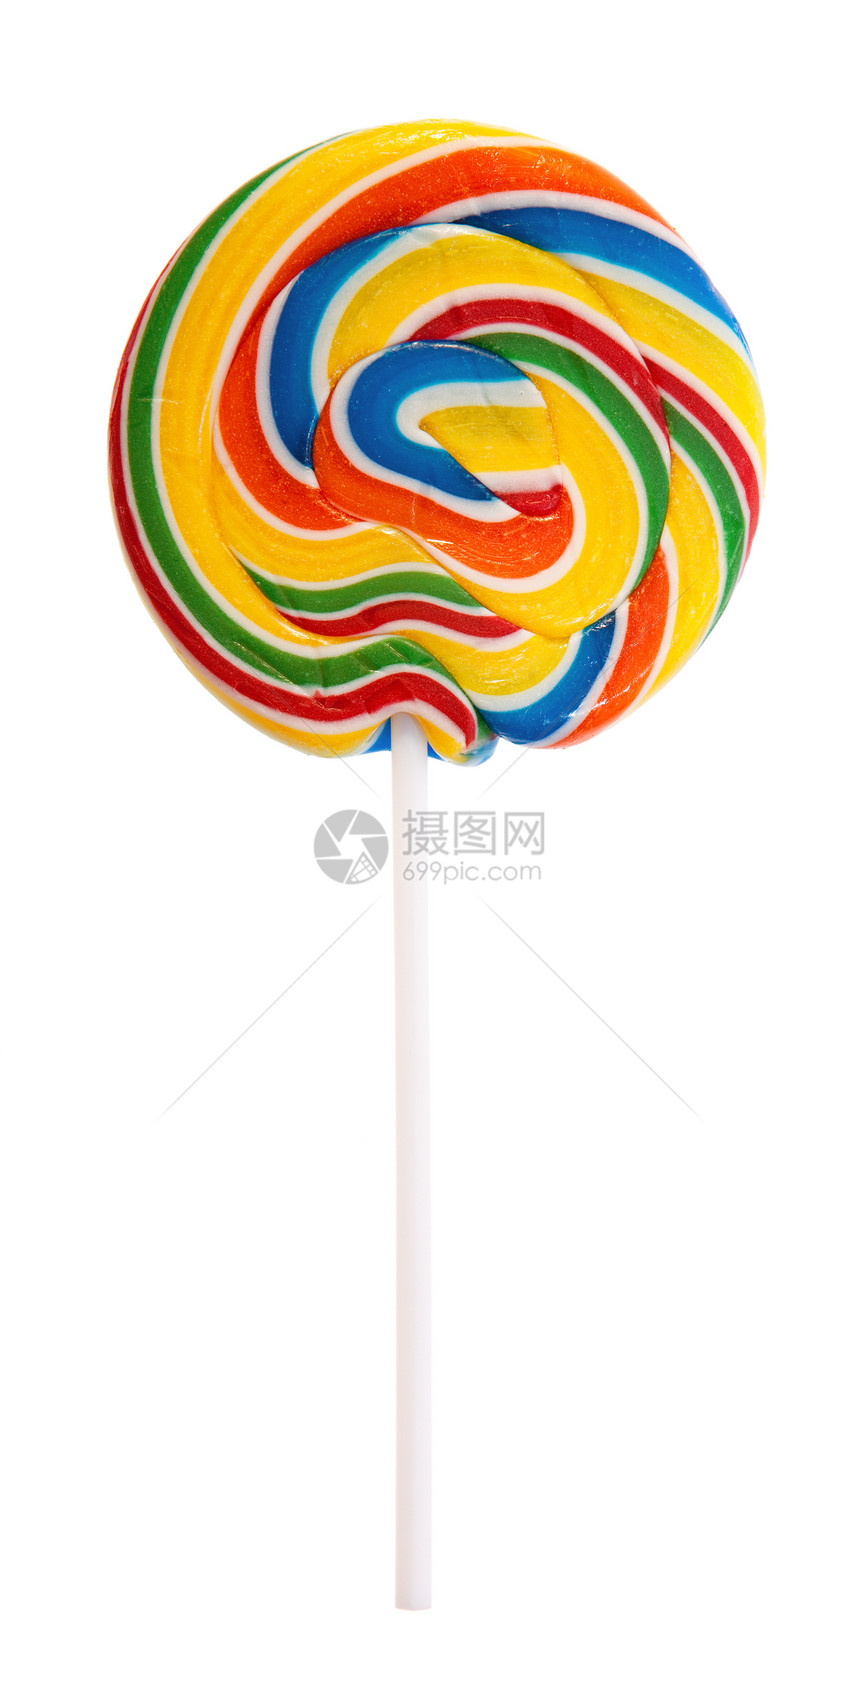 色彩多彩的棒棒棒糖诡计食物小吃果味冰棒甘蔗营养漩涡彩虹糖果图片